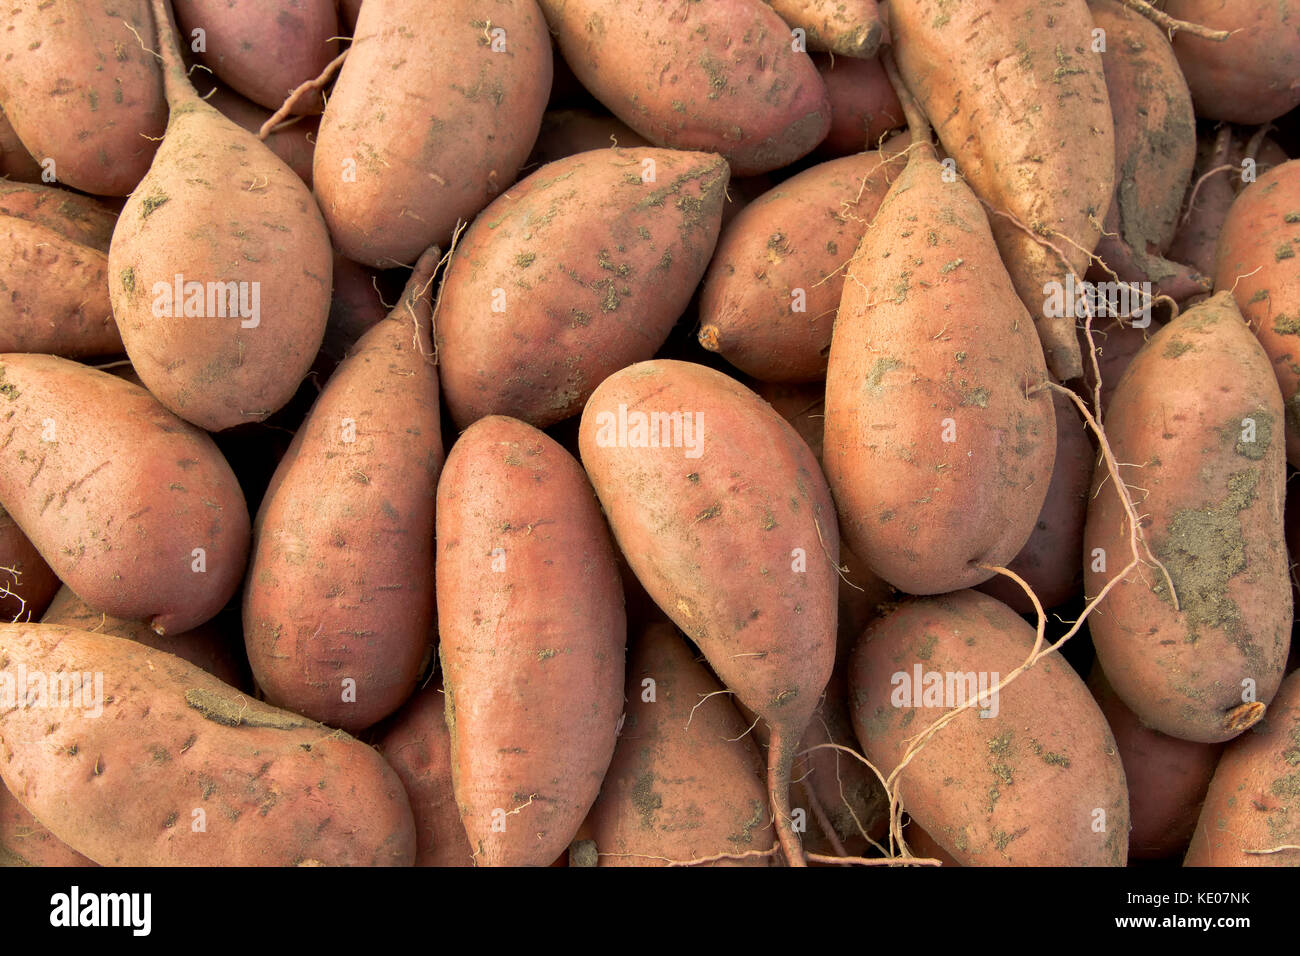 Kamote tubérculos, los cultivares de Batata Ipomoea batatas', 'Filipinas planta de hierbas medicinales. Foto de stock